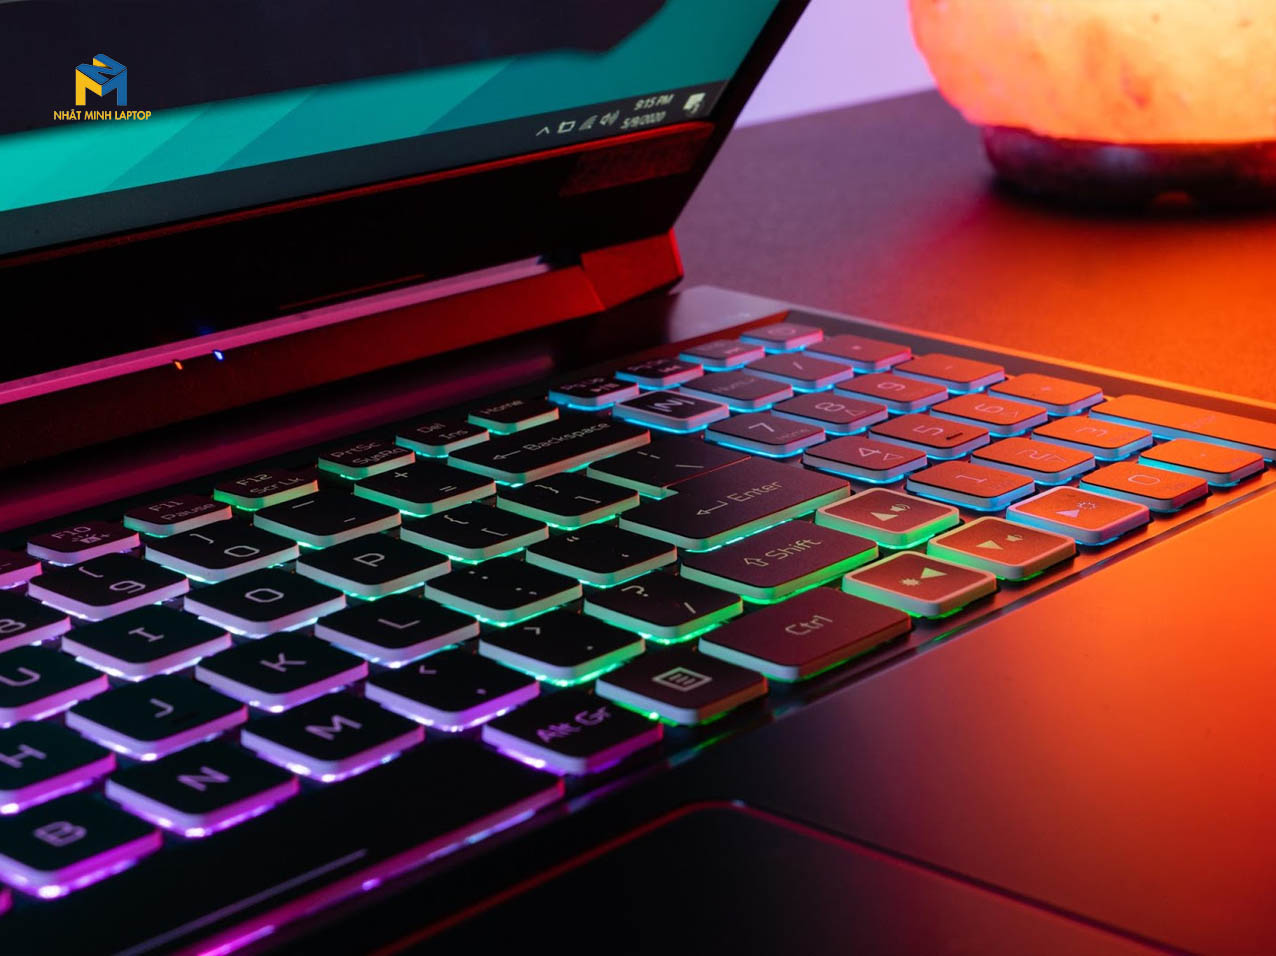 Laptop Gaming Acer Nitro 5 AN515-55